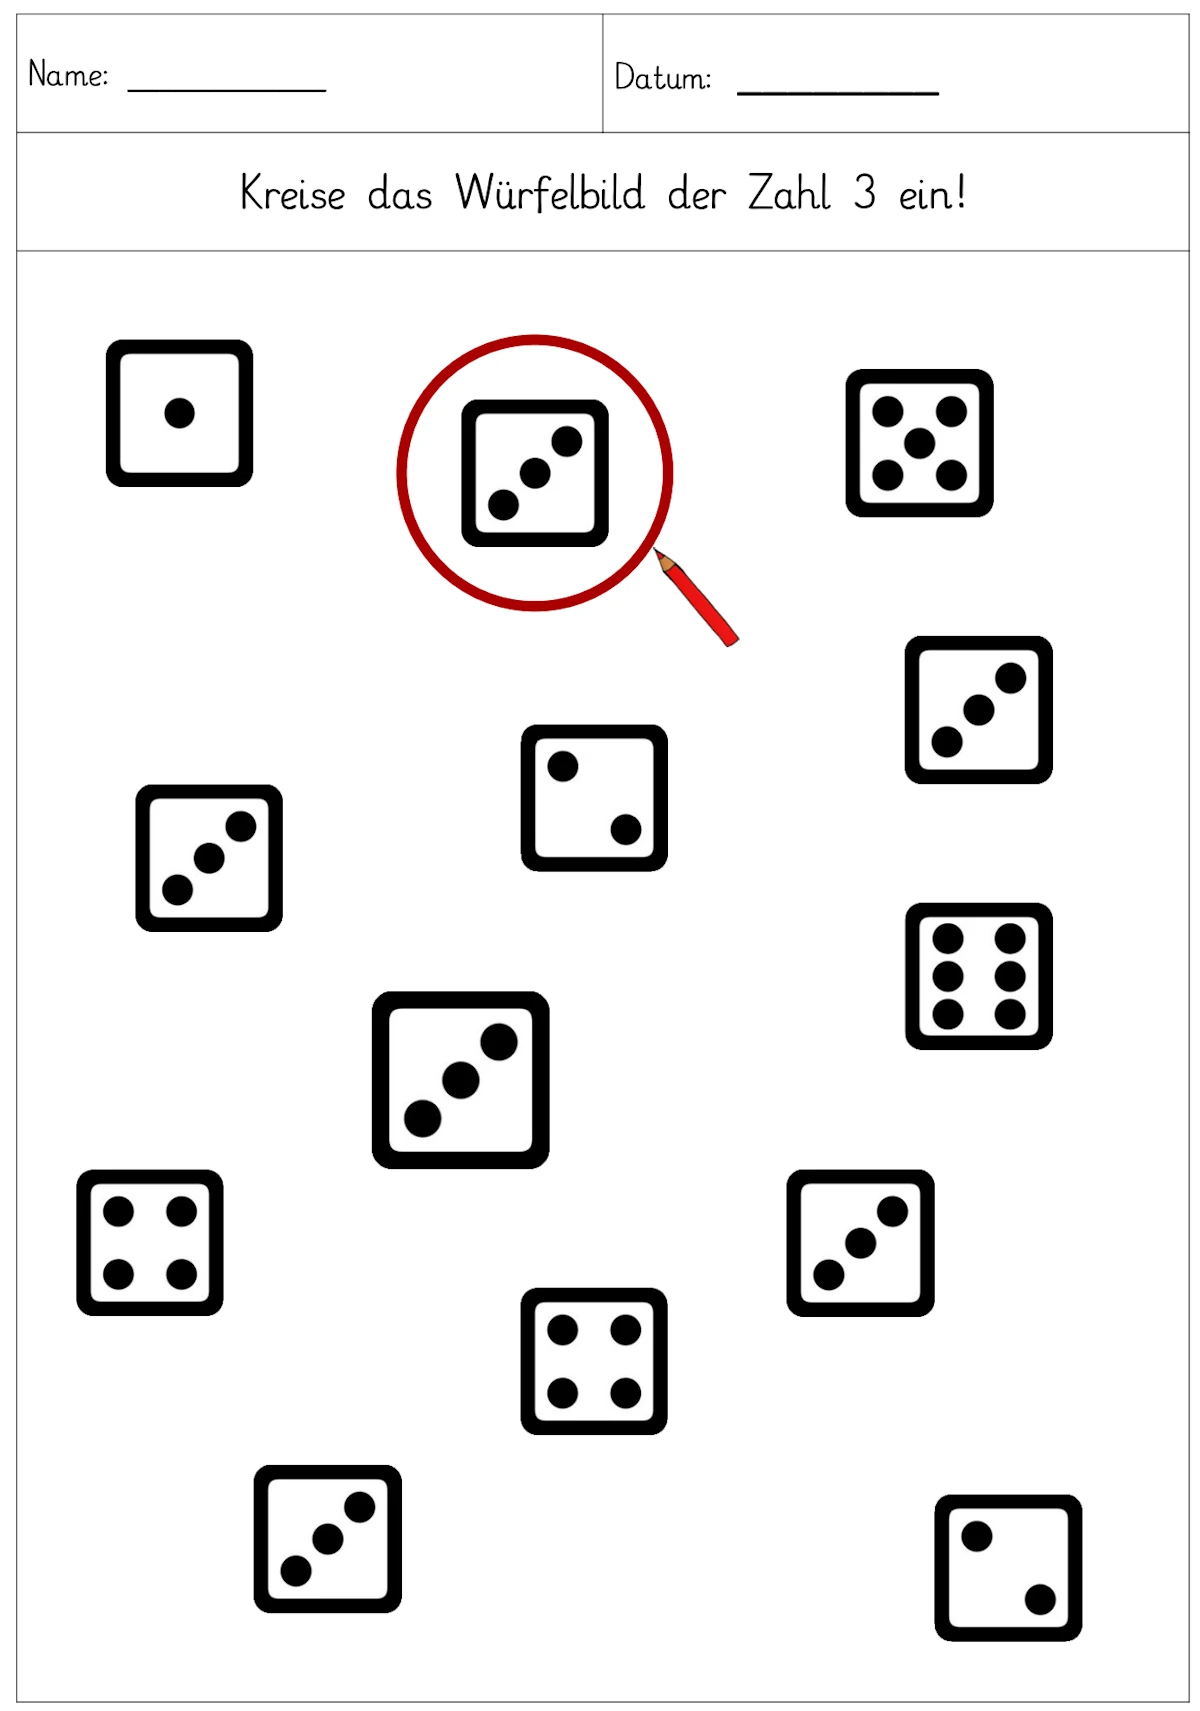 wuerfelbild zahl einkreisen 1 4 • Würfelbilder der Zahlen 1-4 einkreisen